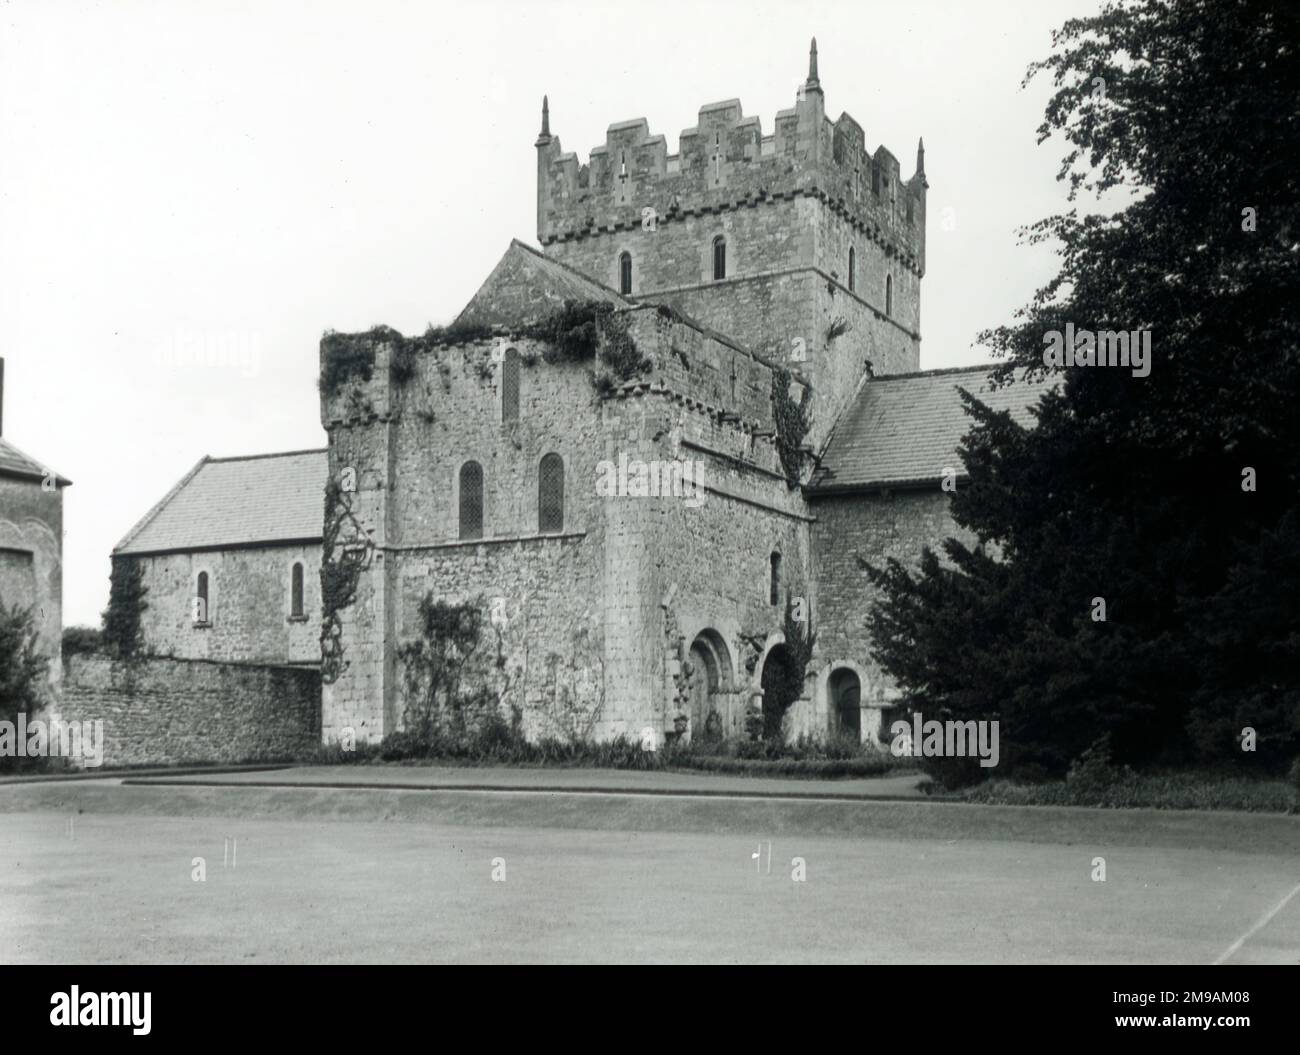 Église du Prieuré d'Ewenny (Priordy Ewenni) dans la vallée de Glamourgan, pays de Galles - un monastère de l'ordre bénédictin, fondé au 12th siècle. Banque D'Images